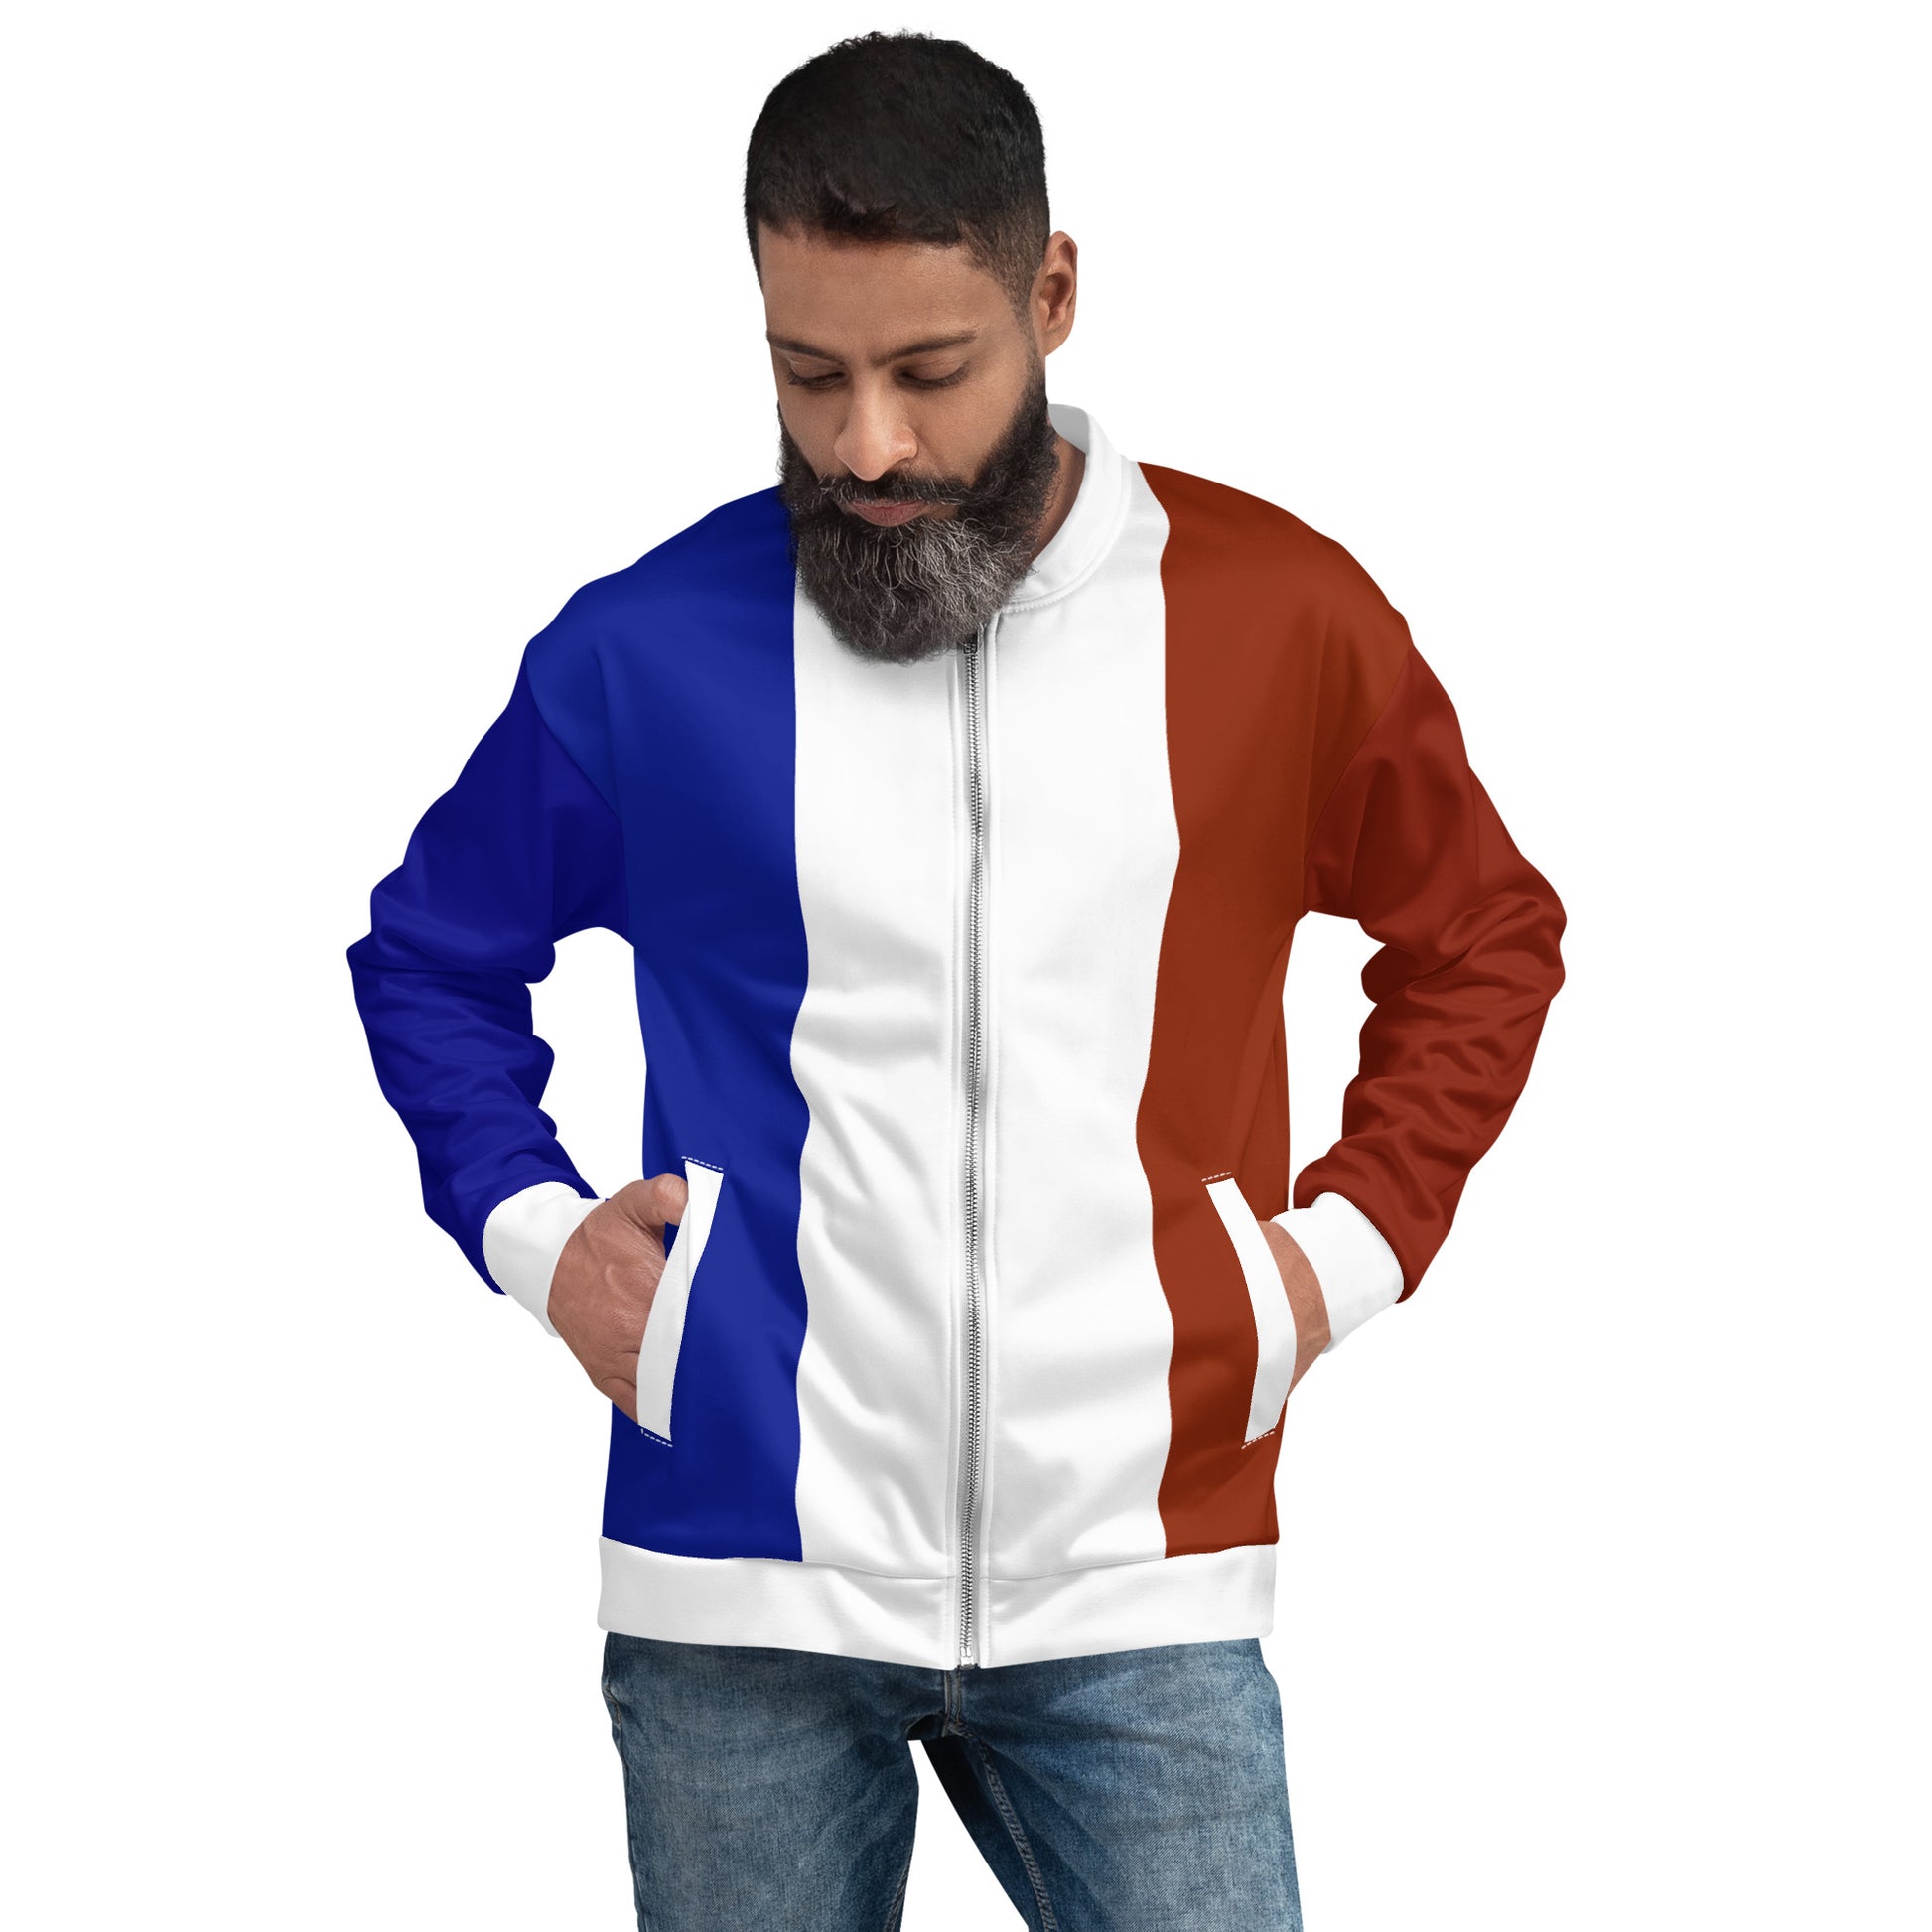 Jacket / Bomber Jacket France Flag / Unisex Clothin YVDdesign